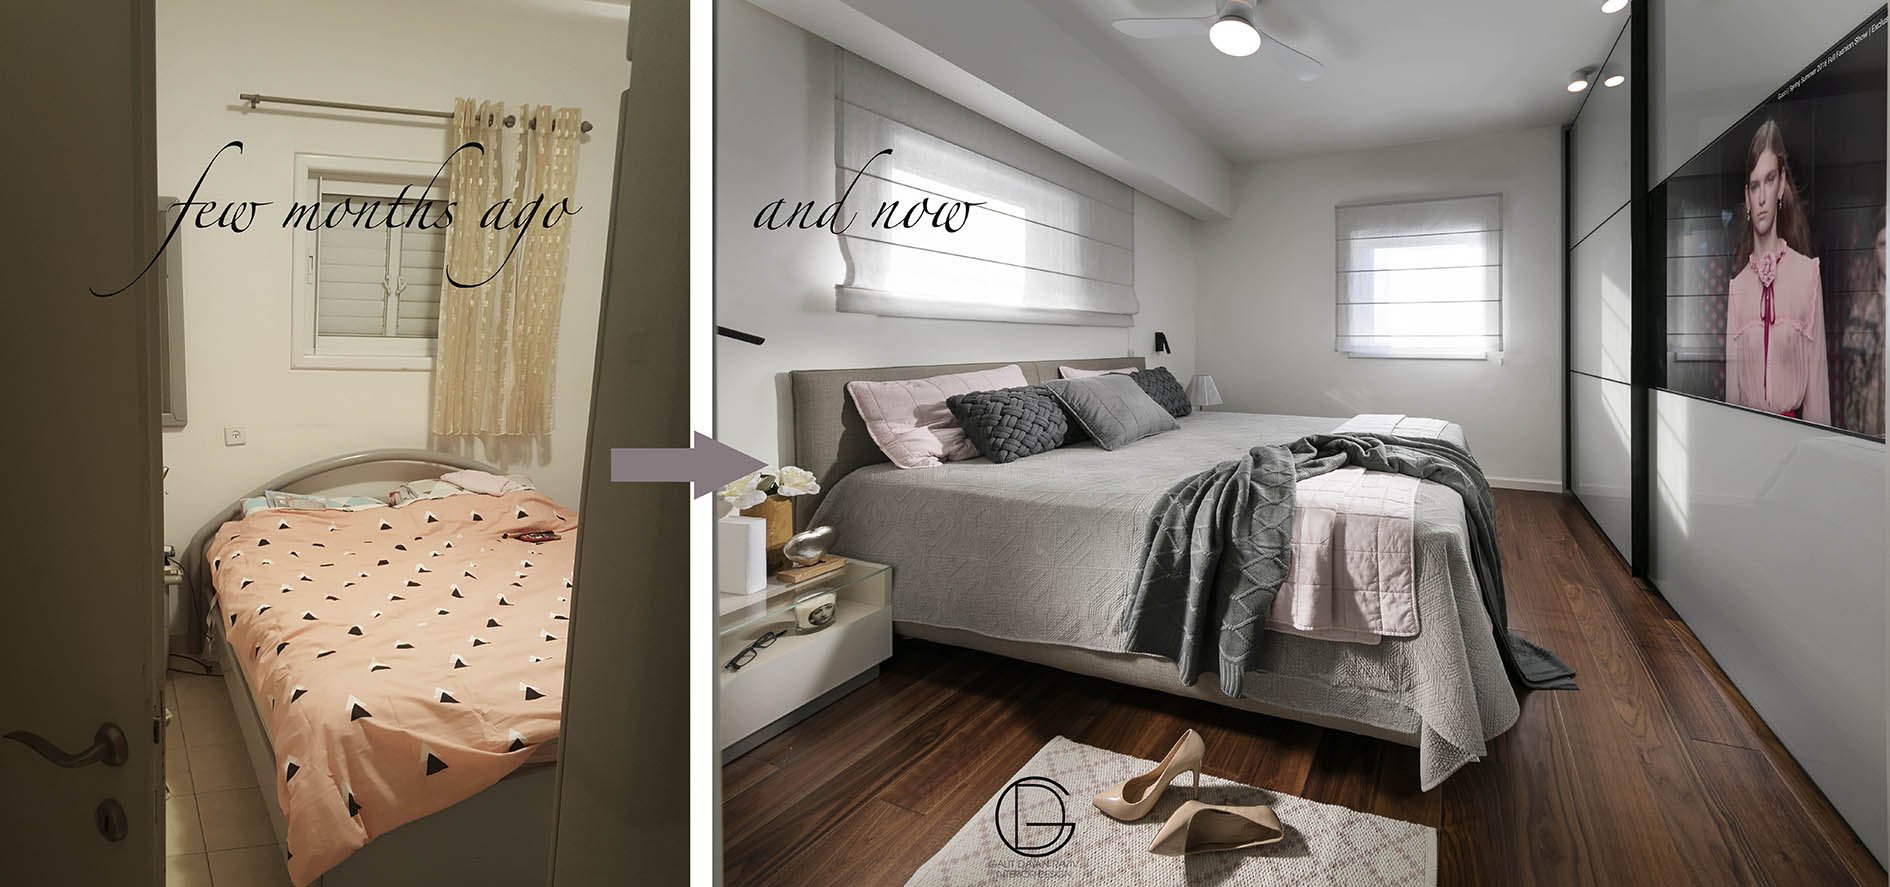 חדר שינה לפני ואחרי